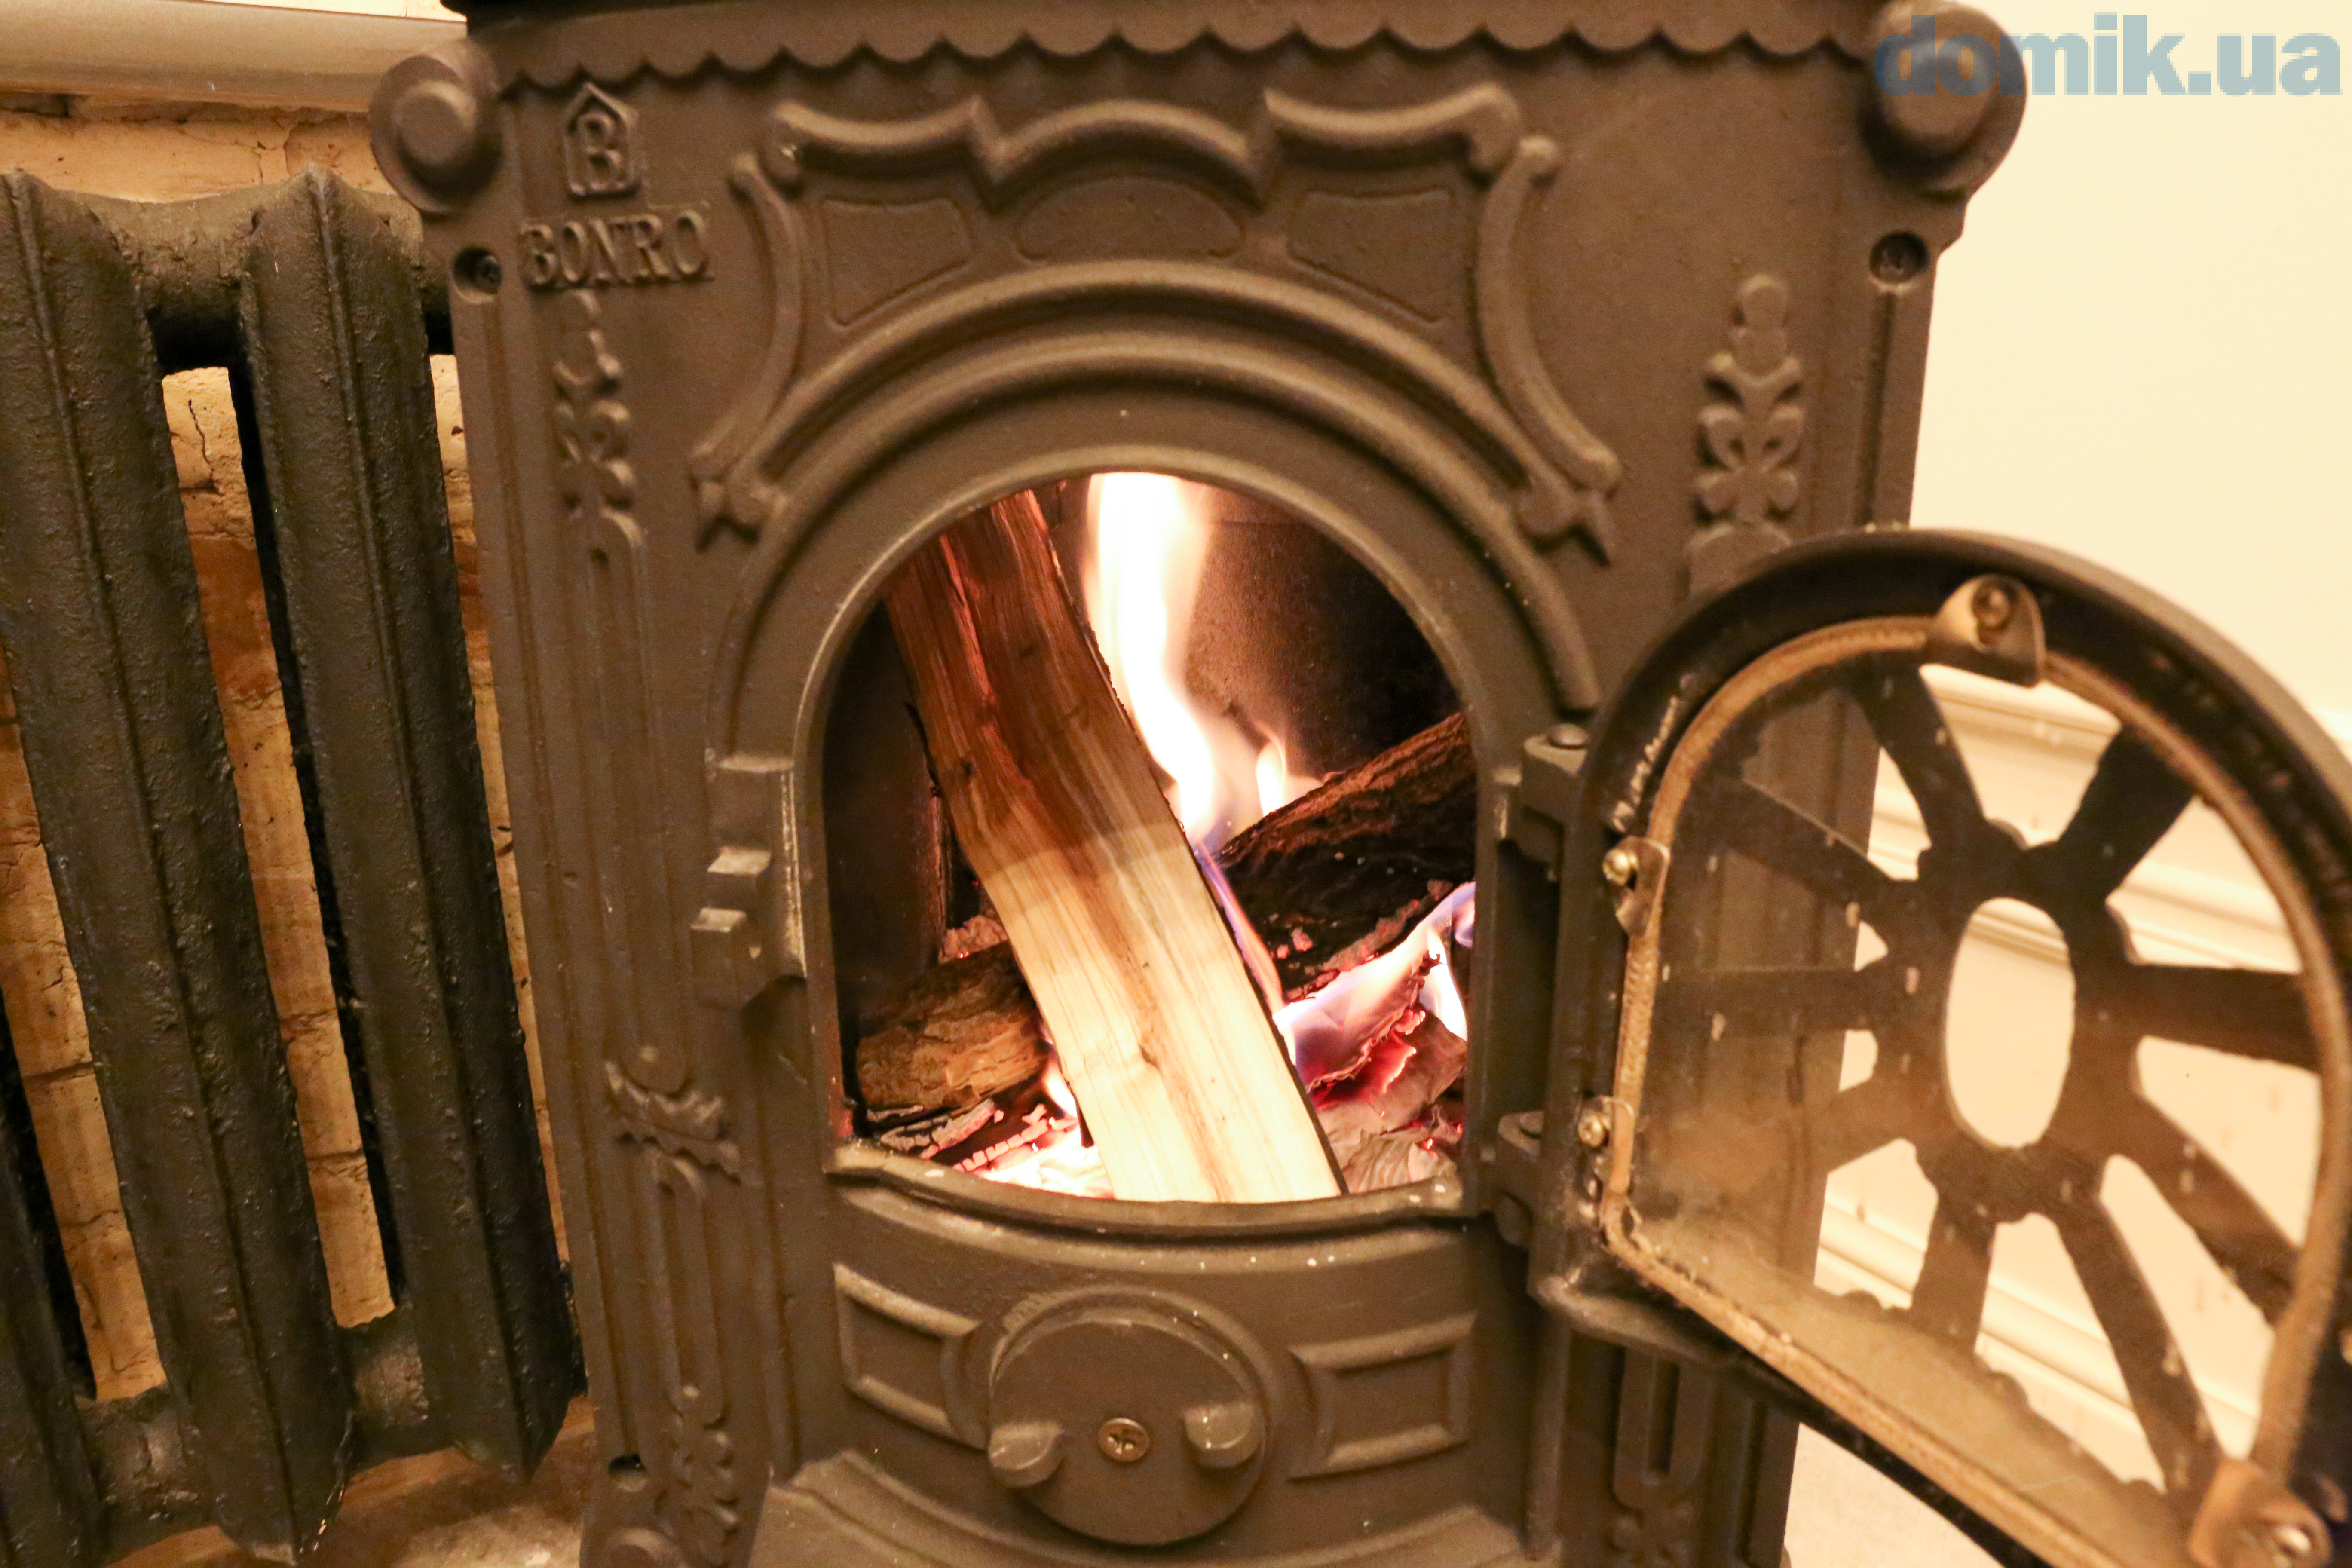 Bronze Fireplace Doors Elegant ÐÑÐ¾Ð´Ð°Ð¼ ÑÑÑÐ´Ð¸Ð¾ ÐÐ°Ð Ð°Ñ ÐÐ¸ÑÐ¾Ð¼Ð¸ÑÑÐºÐ°Ñ ÐÑÐ¿Ð¸ÑÑ ÑÑÑÐ´Ð¸Ð¾